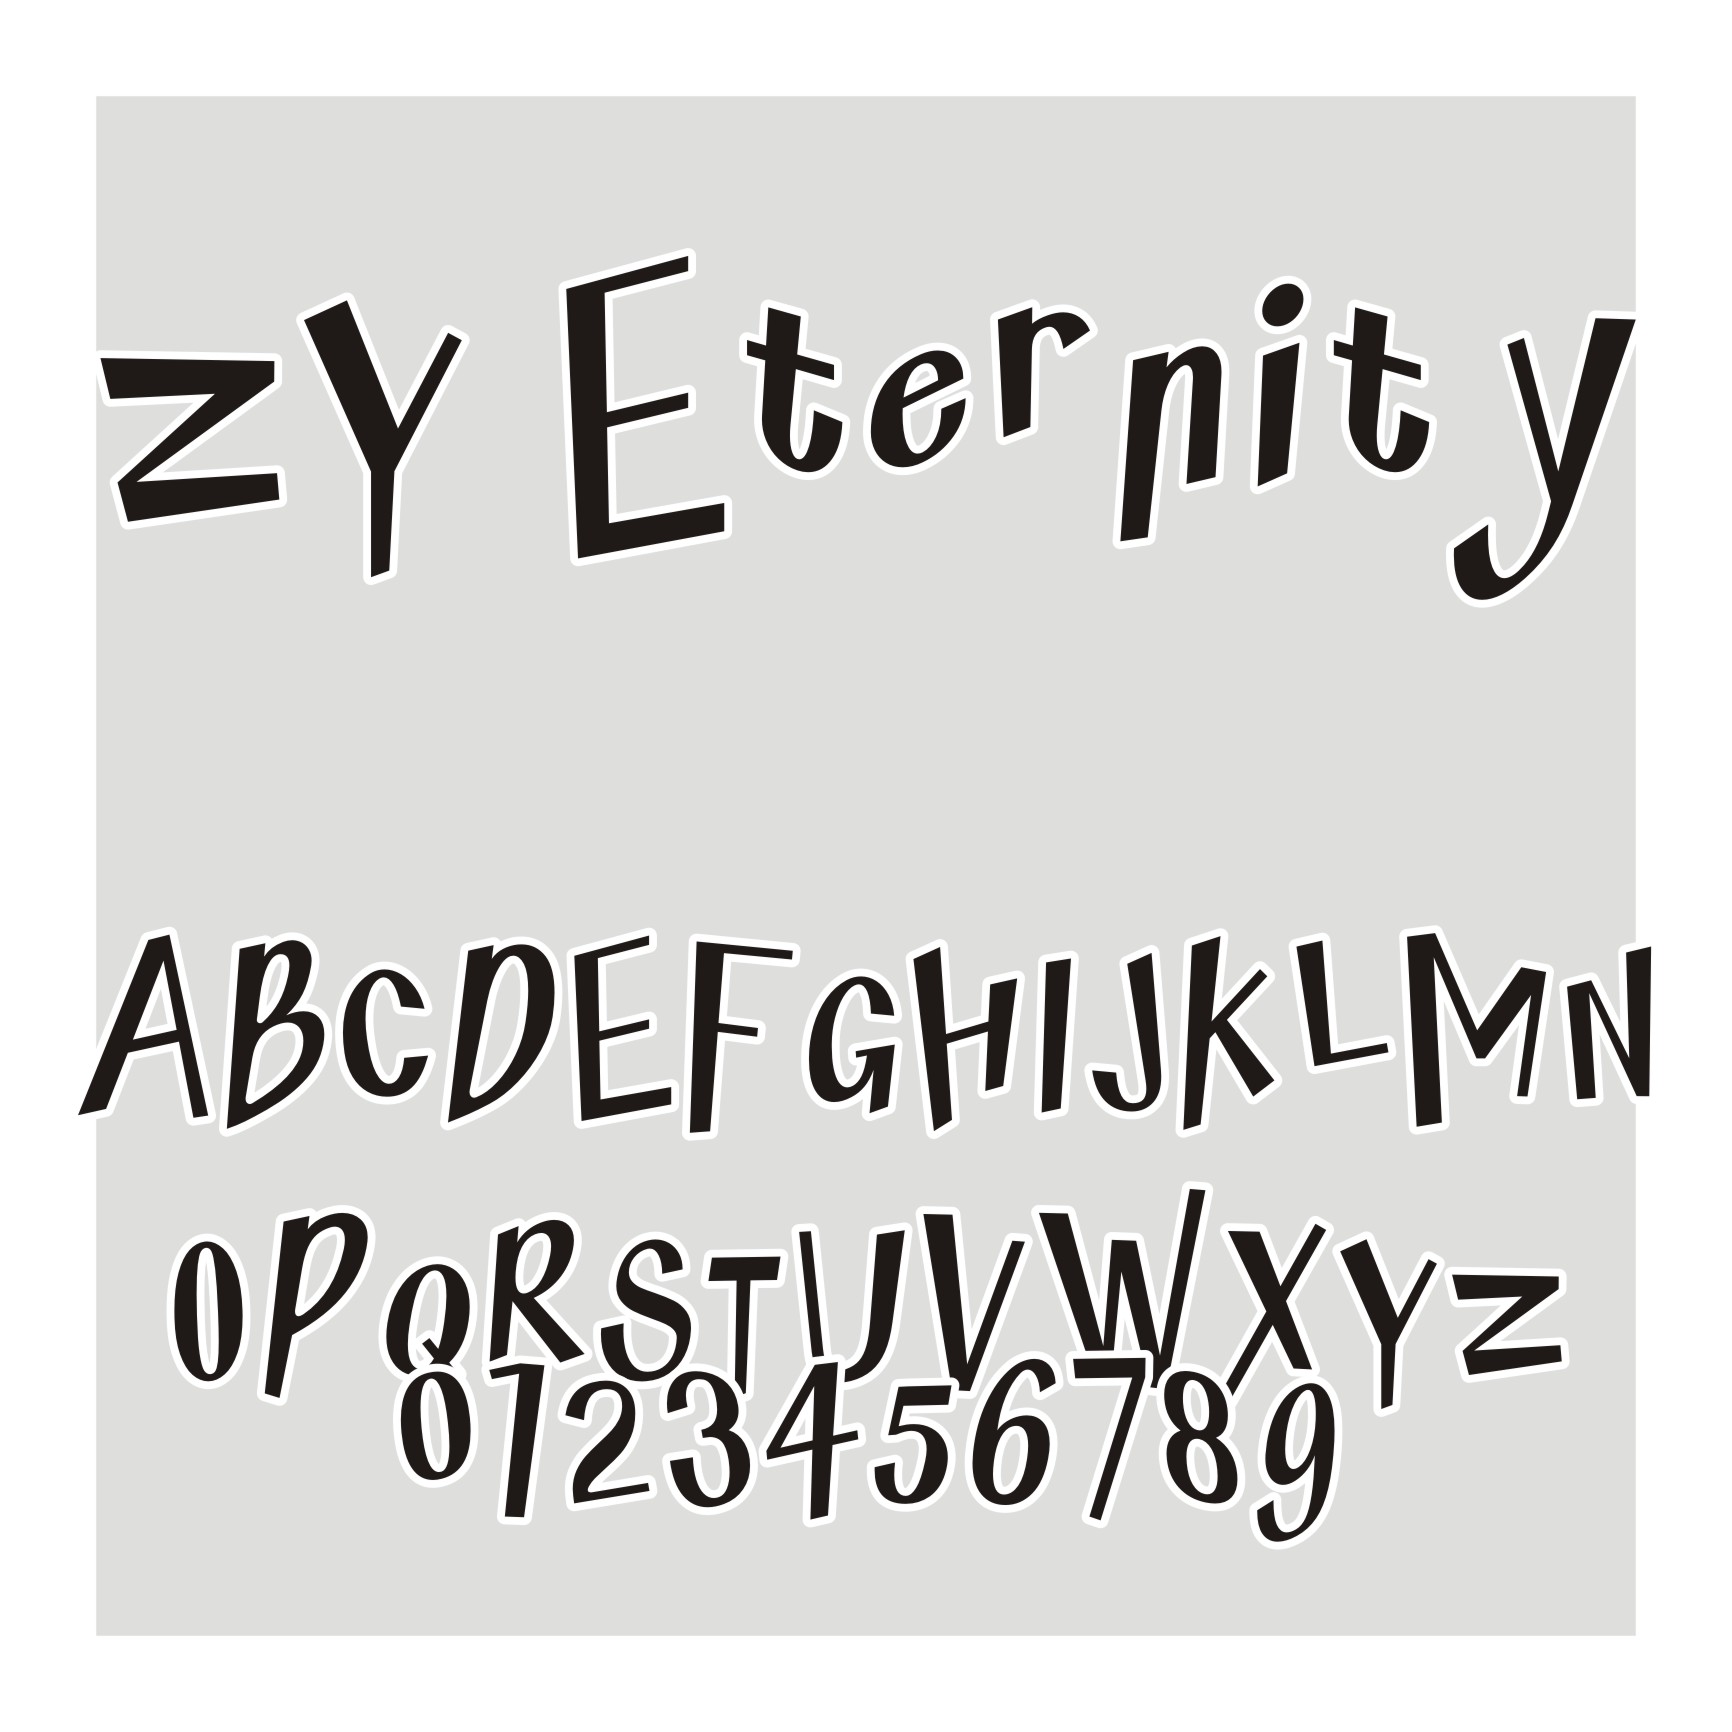 ZY Eternity